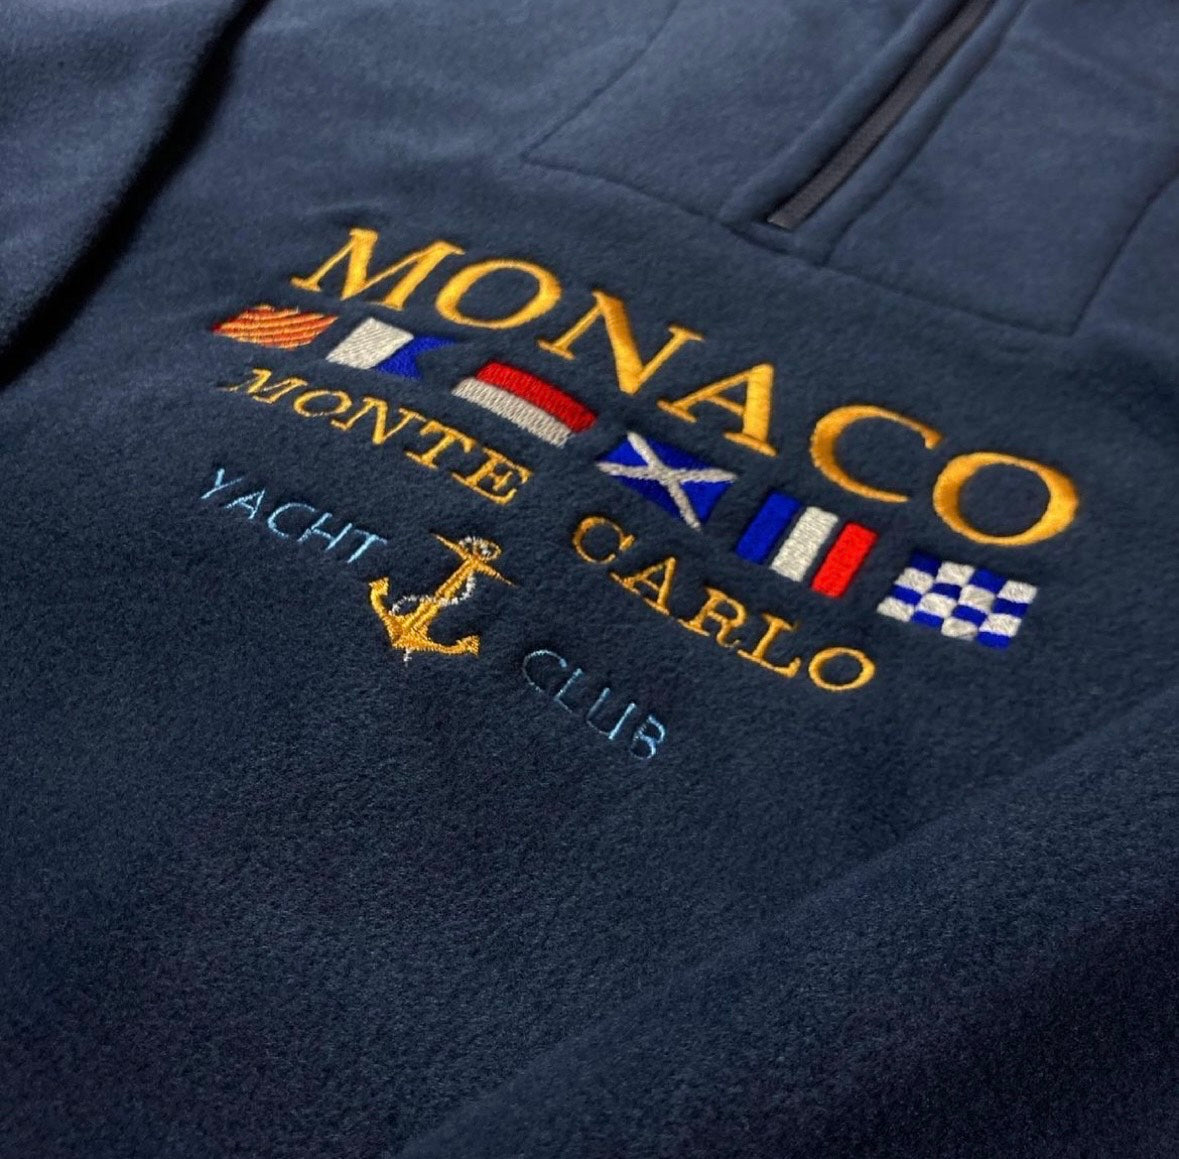 Monaco Half Zip Sweater™